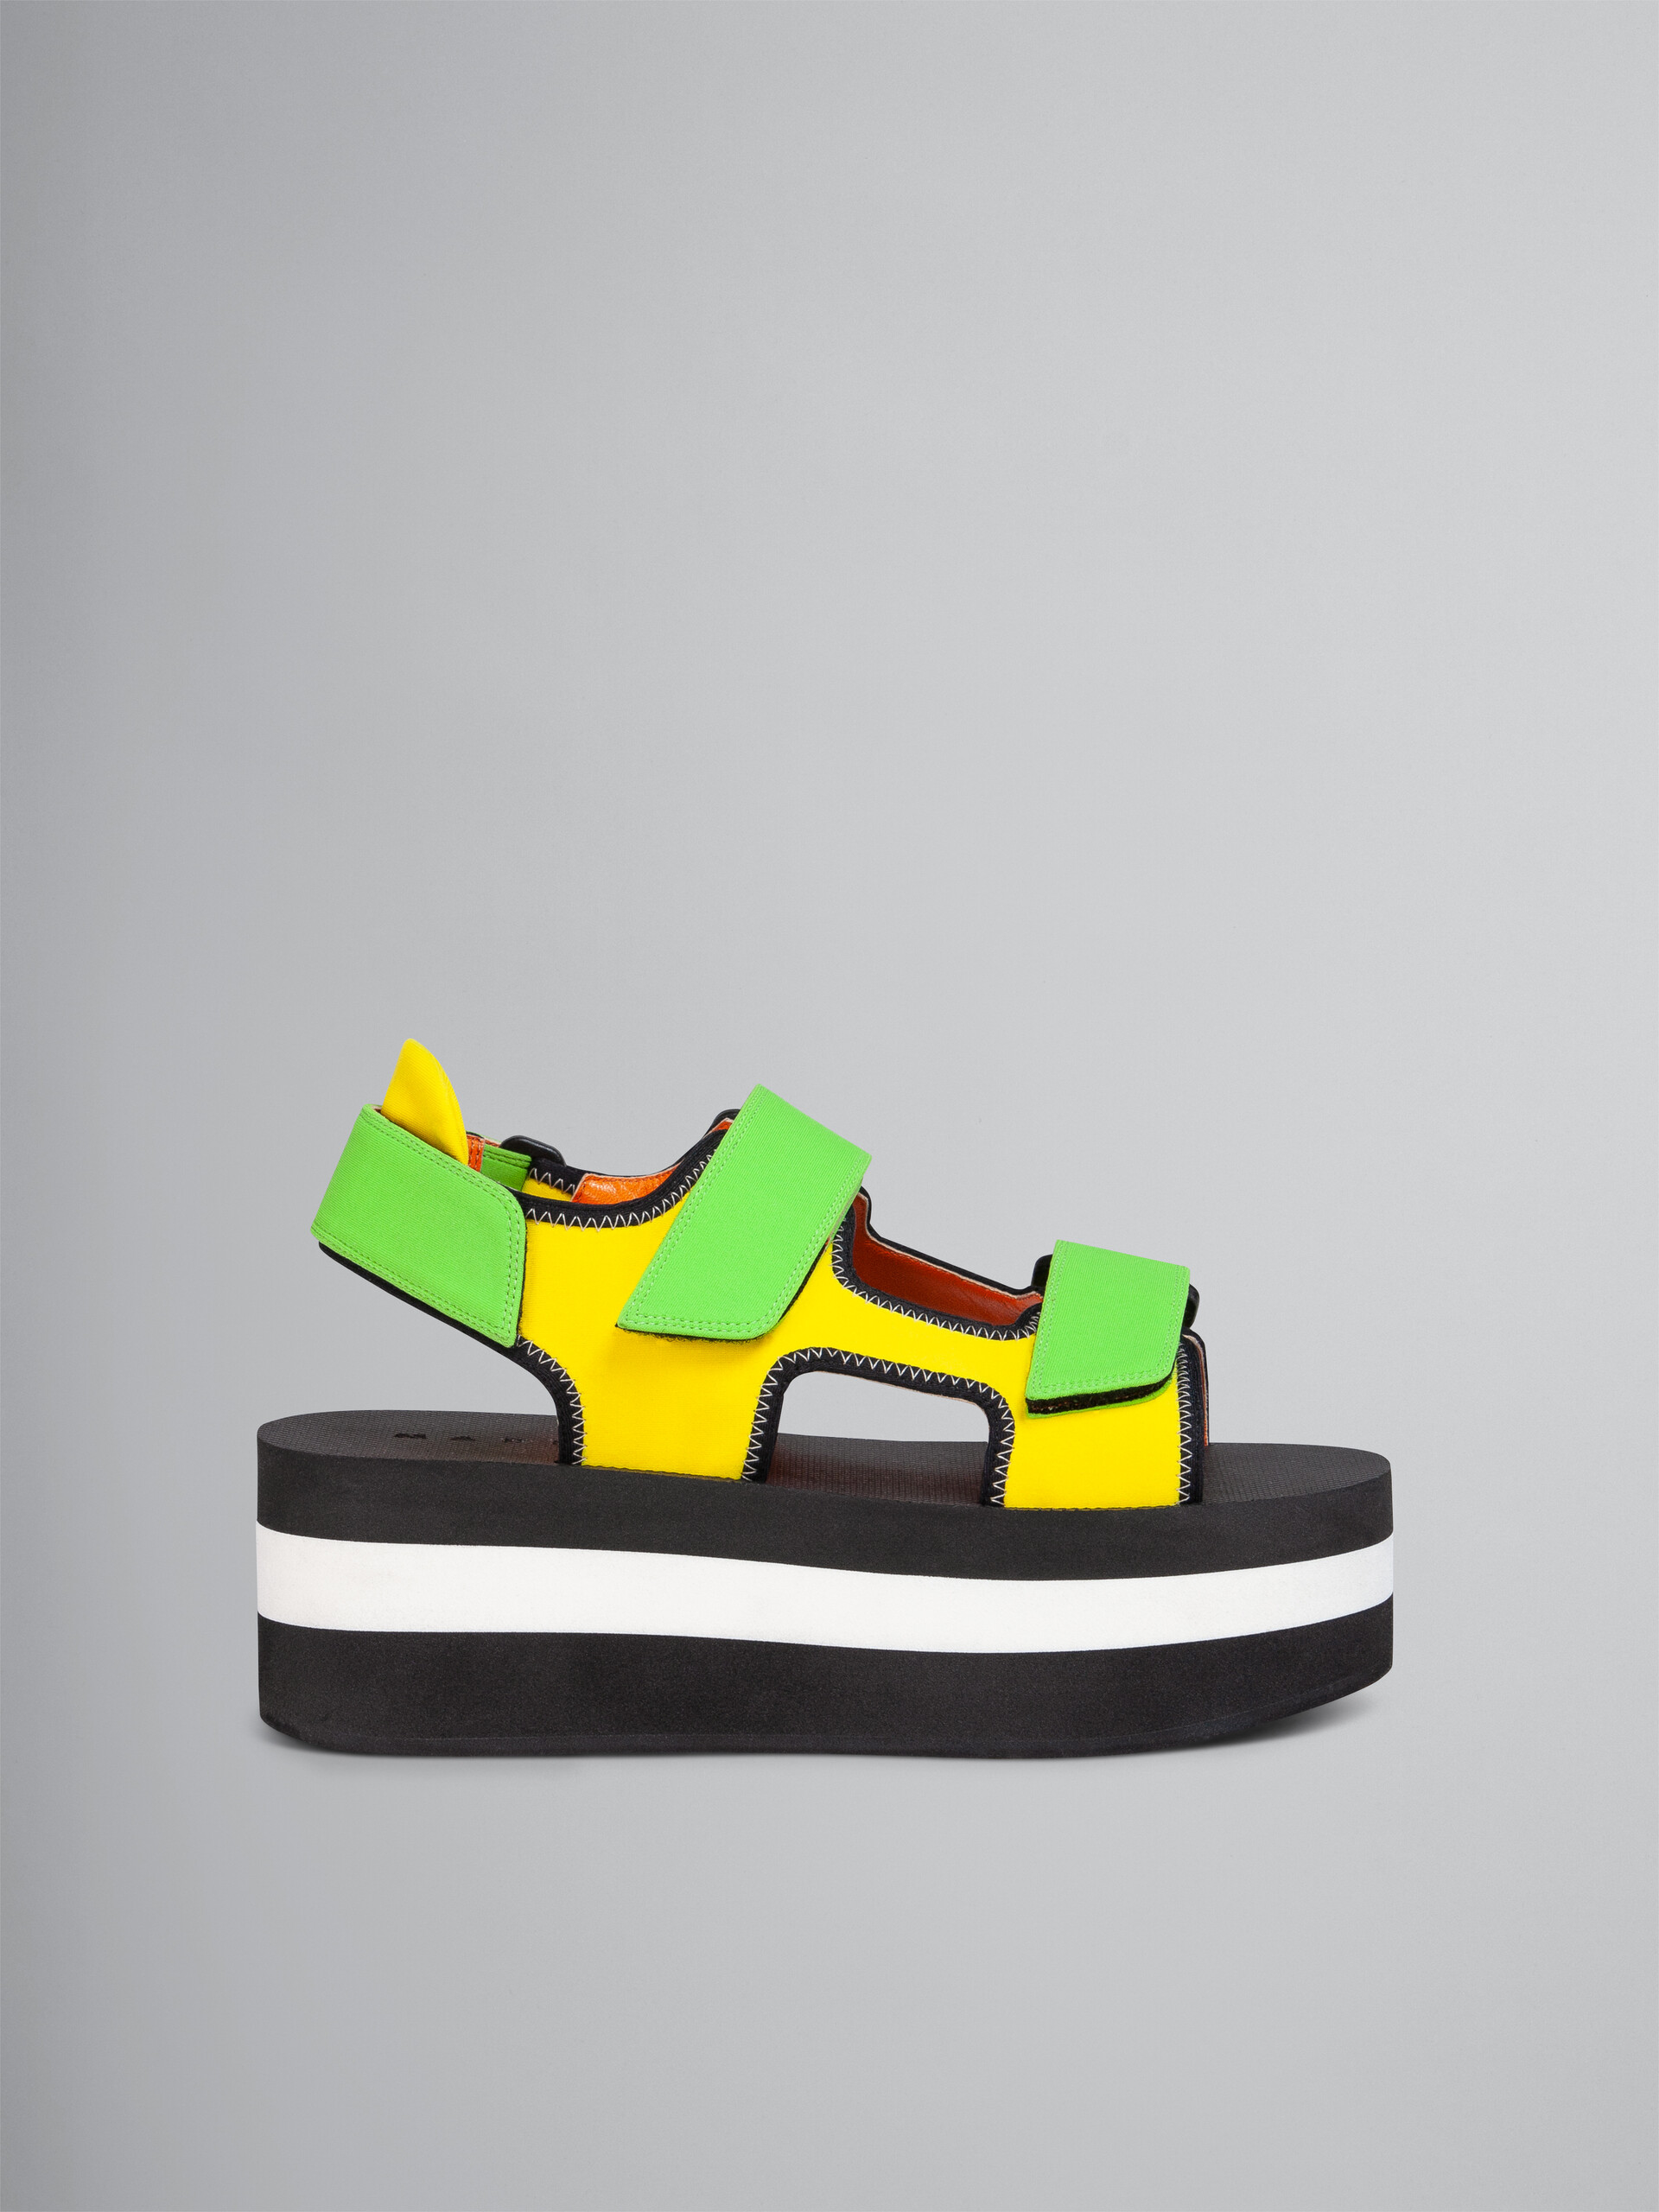 Sandalia de tejido técnico amarillo y verde - Sandalias - Image 1